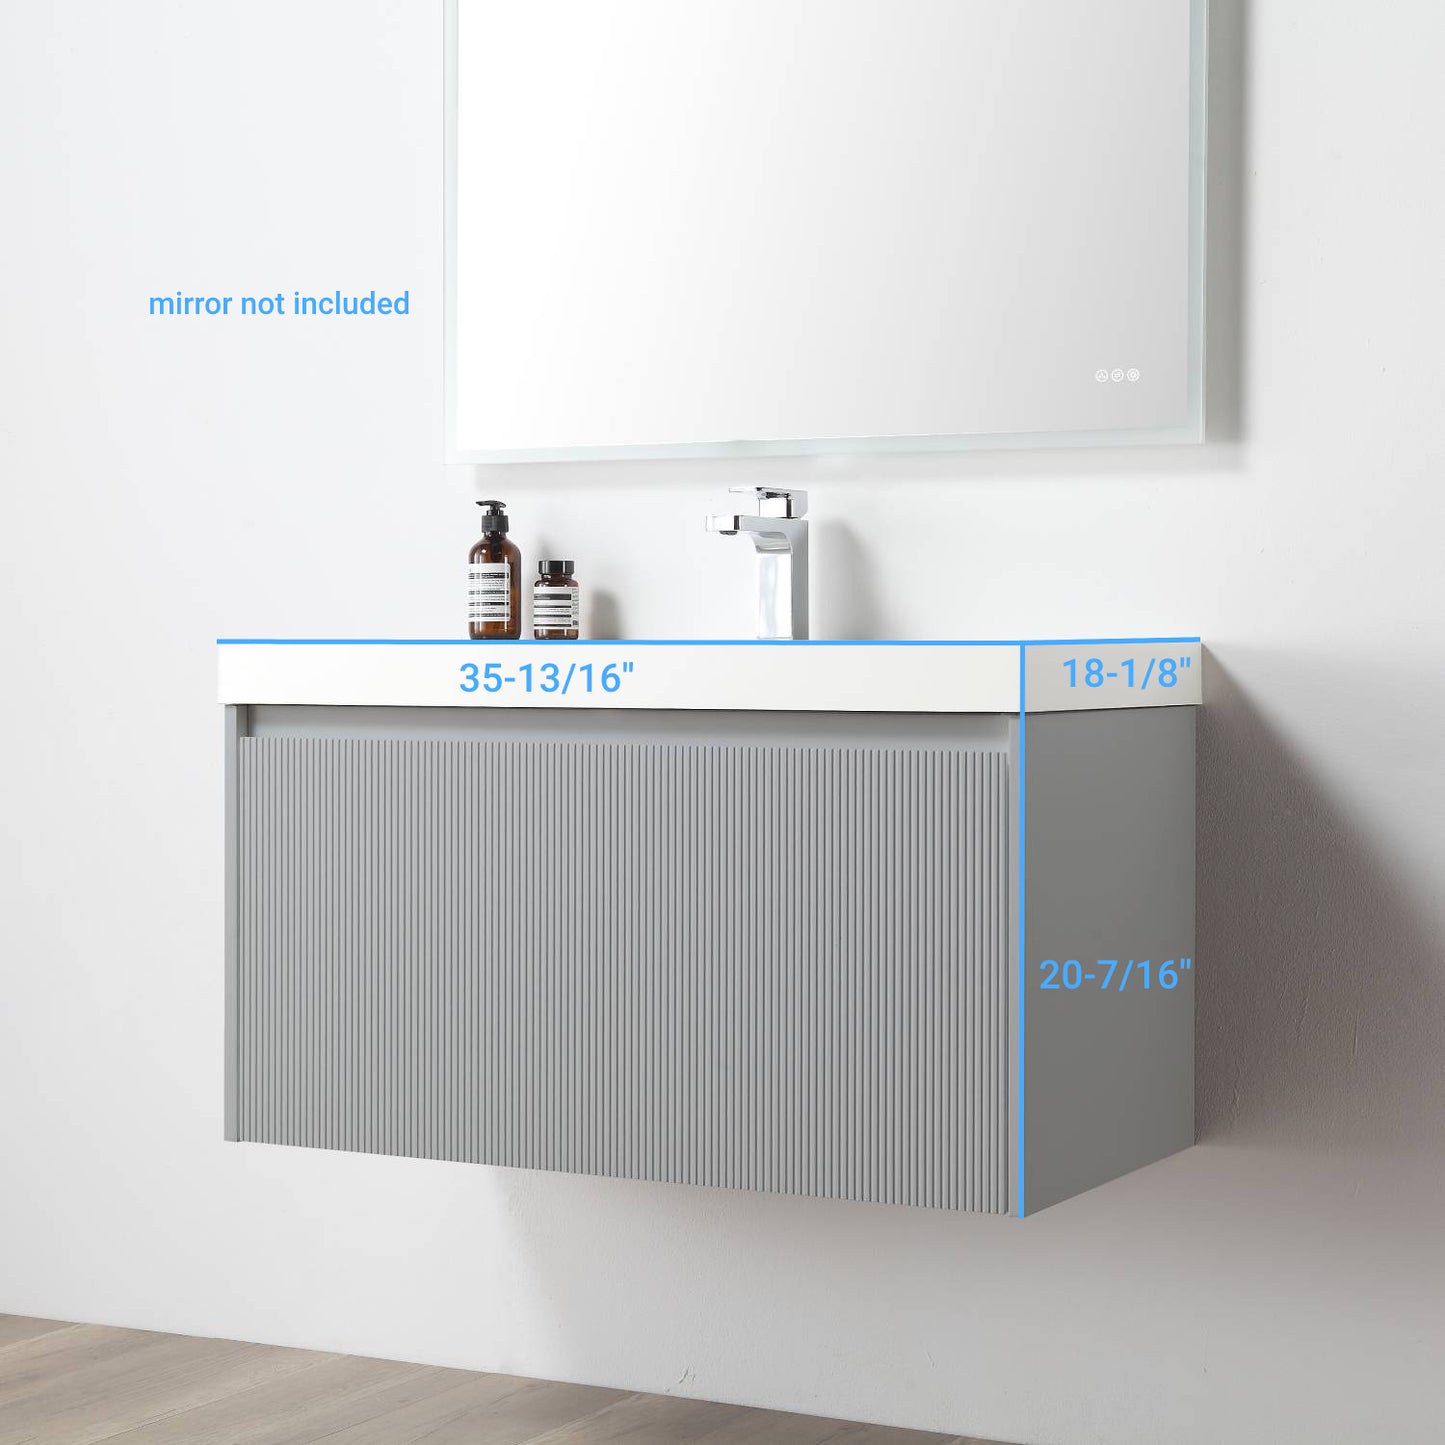 Positano 36" Floating Bathroom Vanity with Acrylic Sink - Light Grey